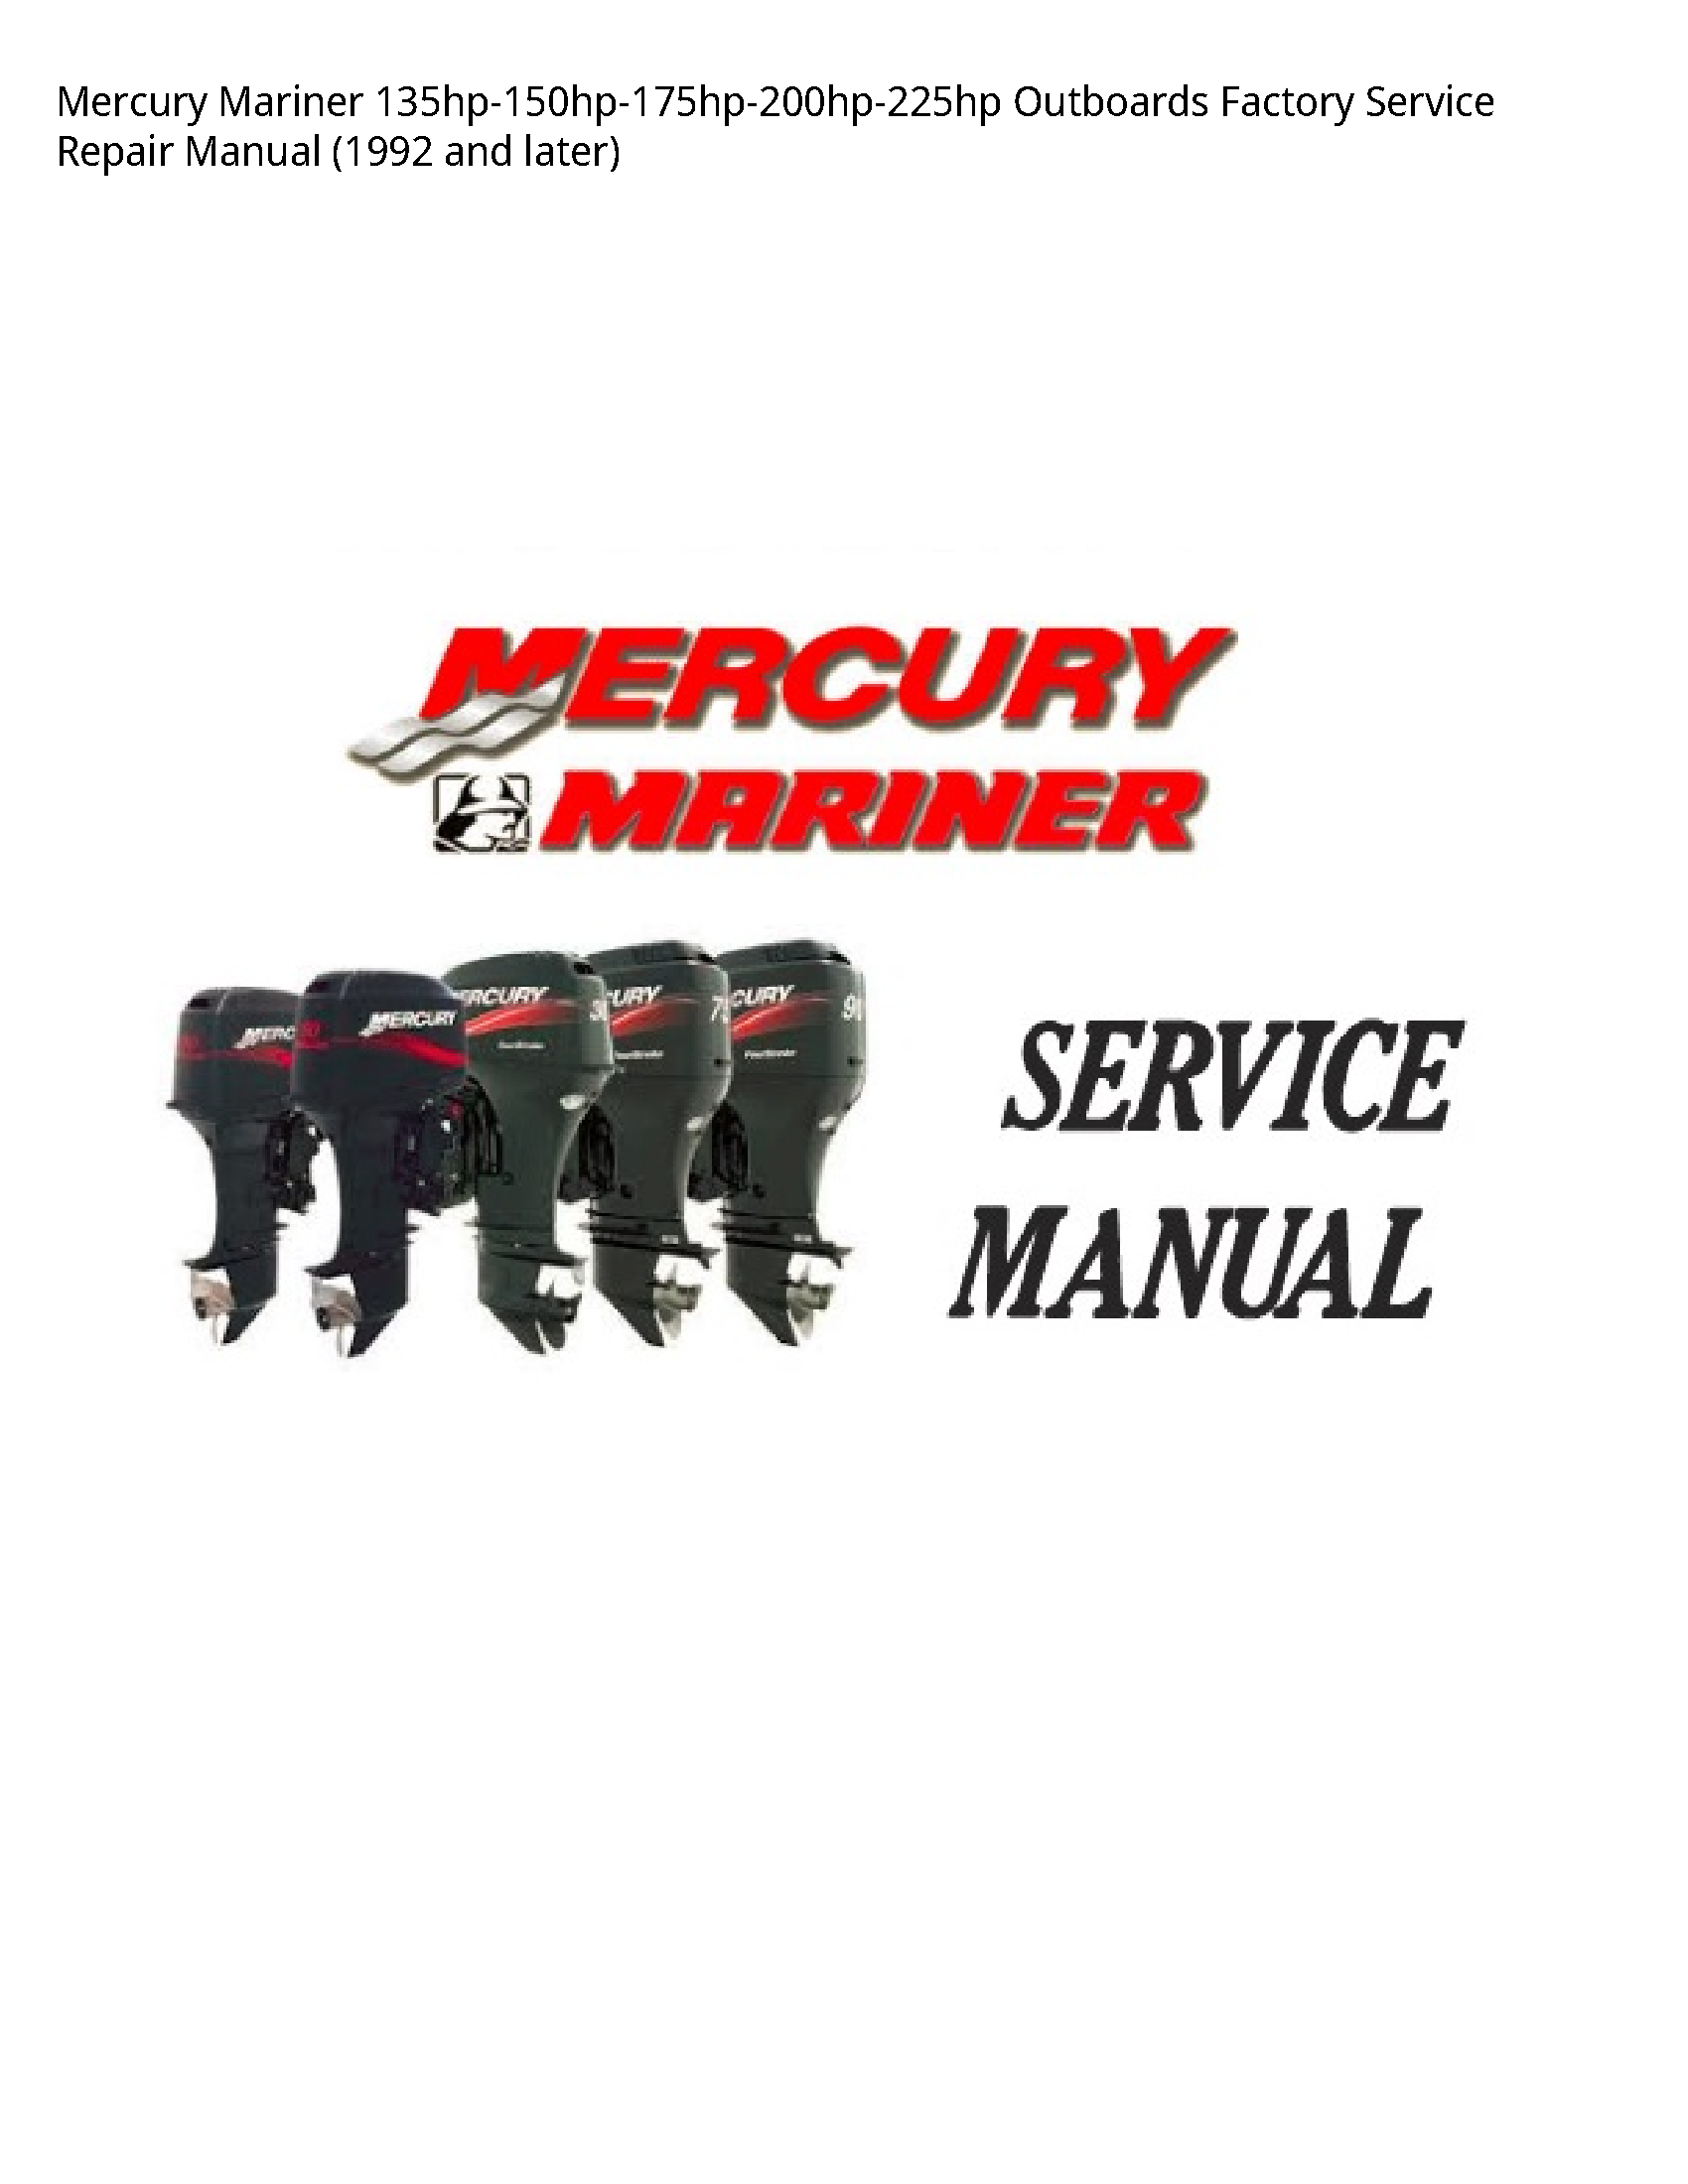 Mercury Mariner 135hp-150hp-175hp-200hp-225hp Outboards Factory manual